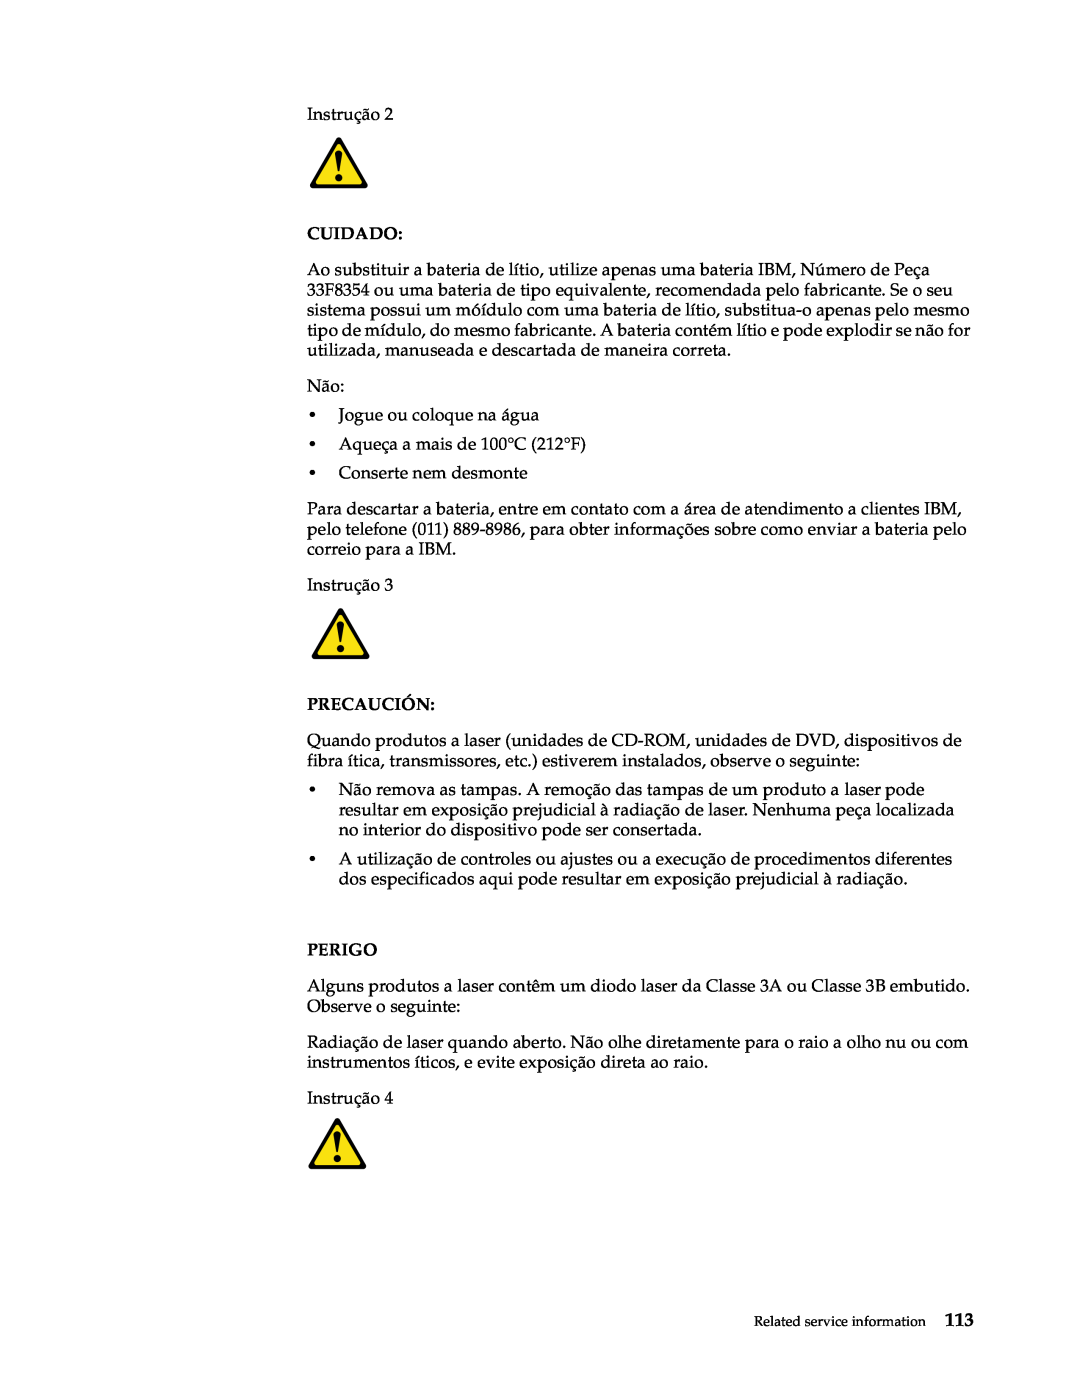 IBM x Series 200 manual Cuidado, Precaución, Perigo 